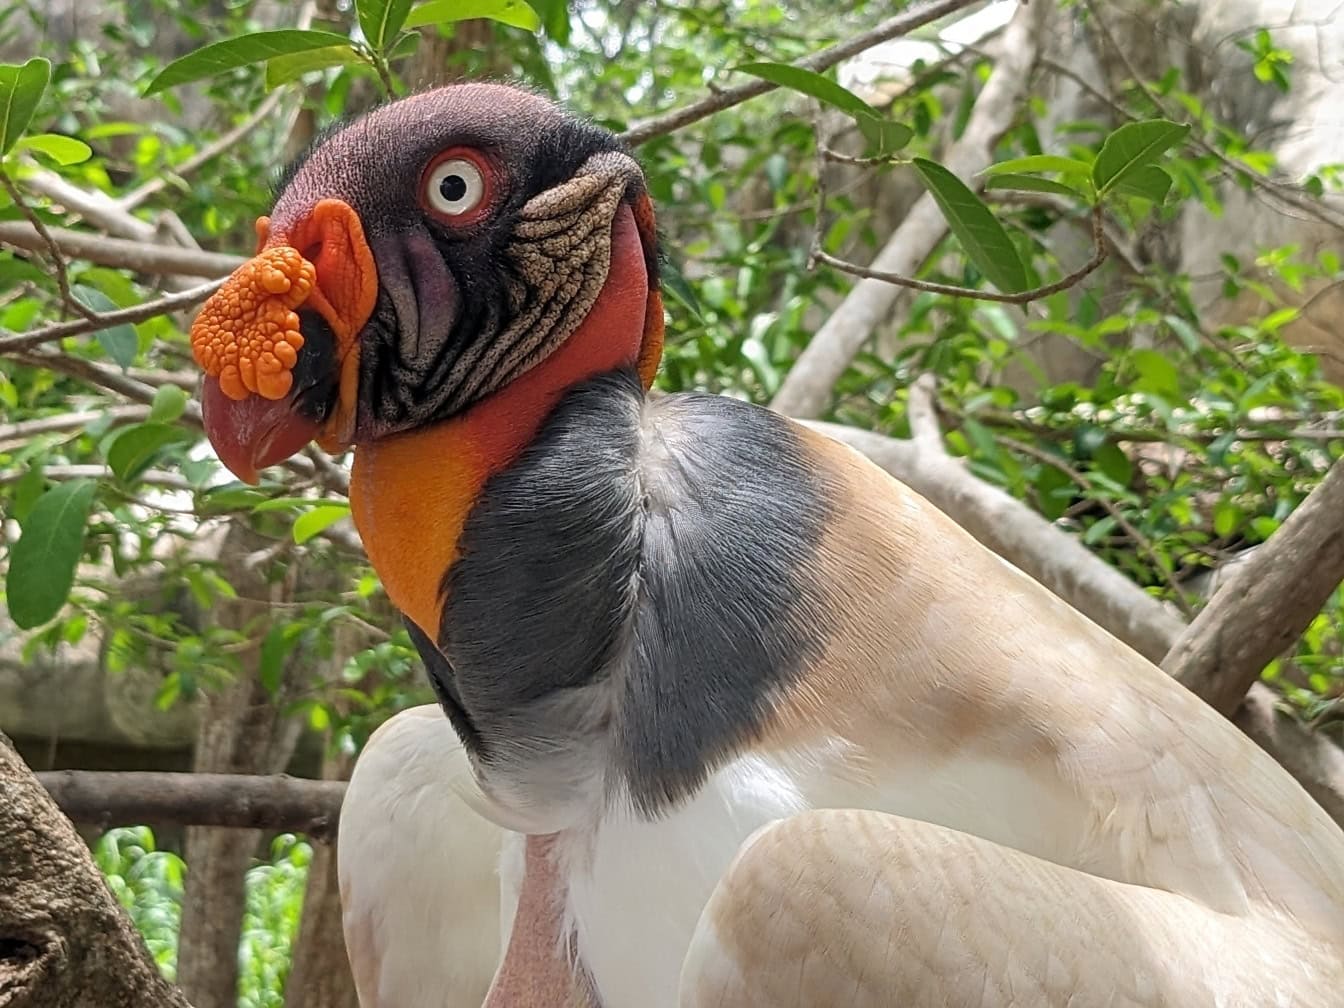 ภาพระยะใกล้ของนกแร้งราชา (Sarcoramphus papa) นกเขตร้อนที่มีจงอยปากสีส้มขนาดใหญ่